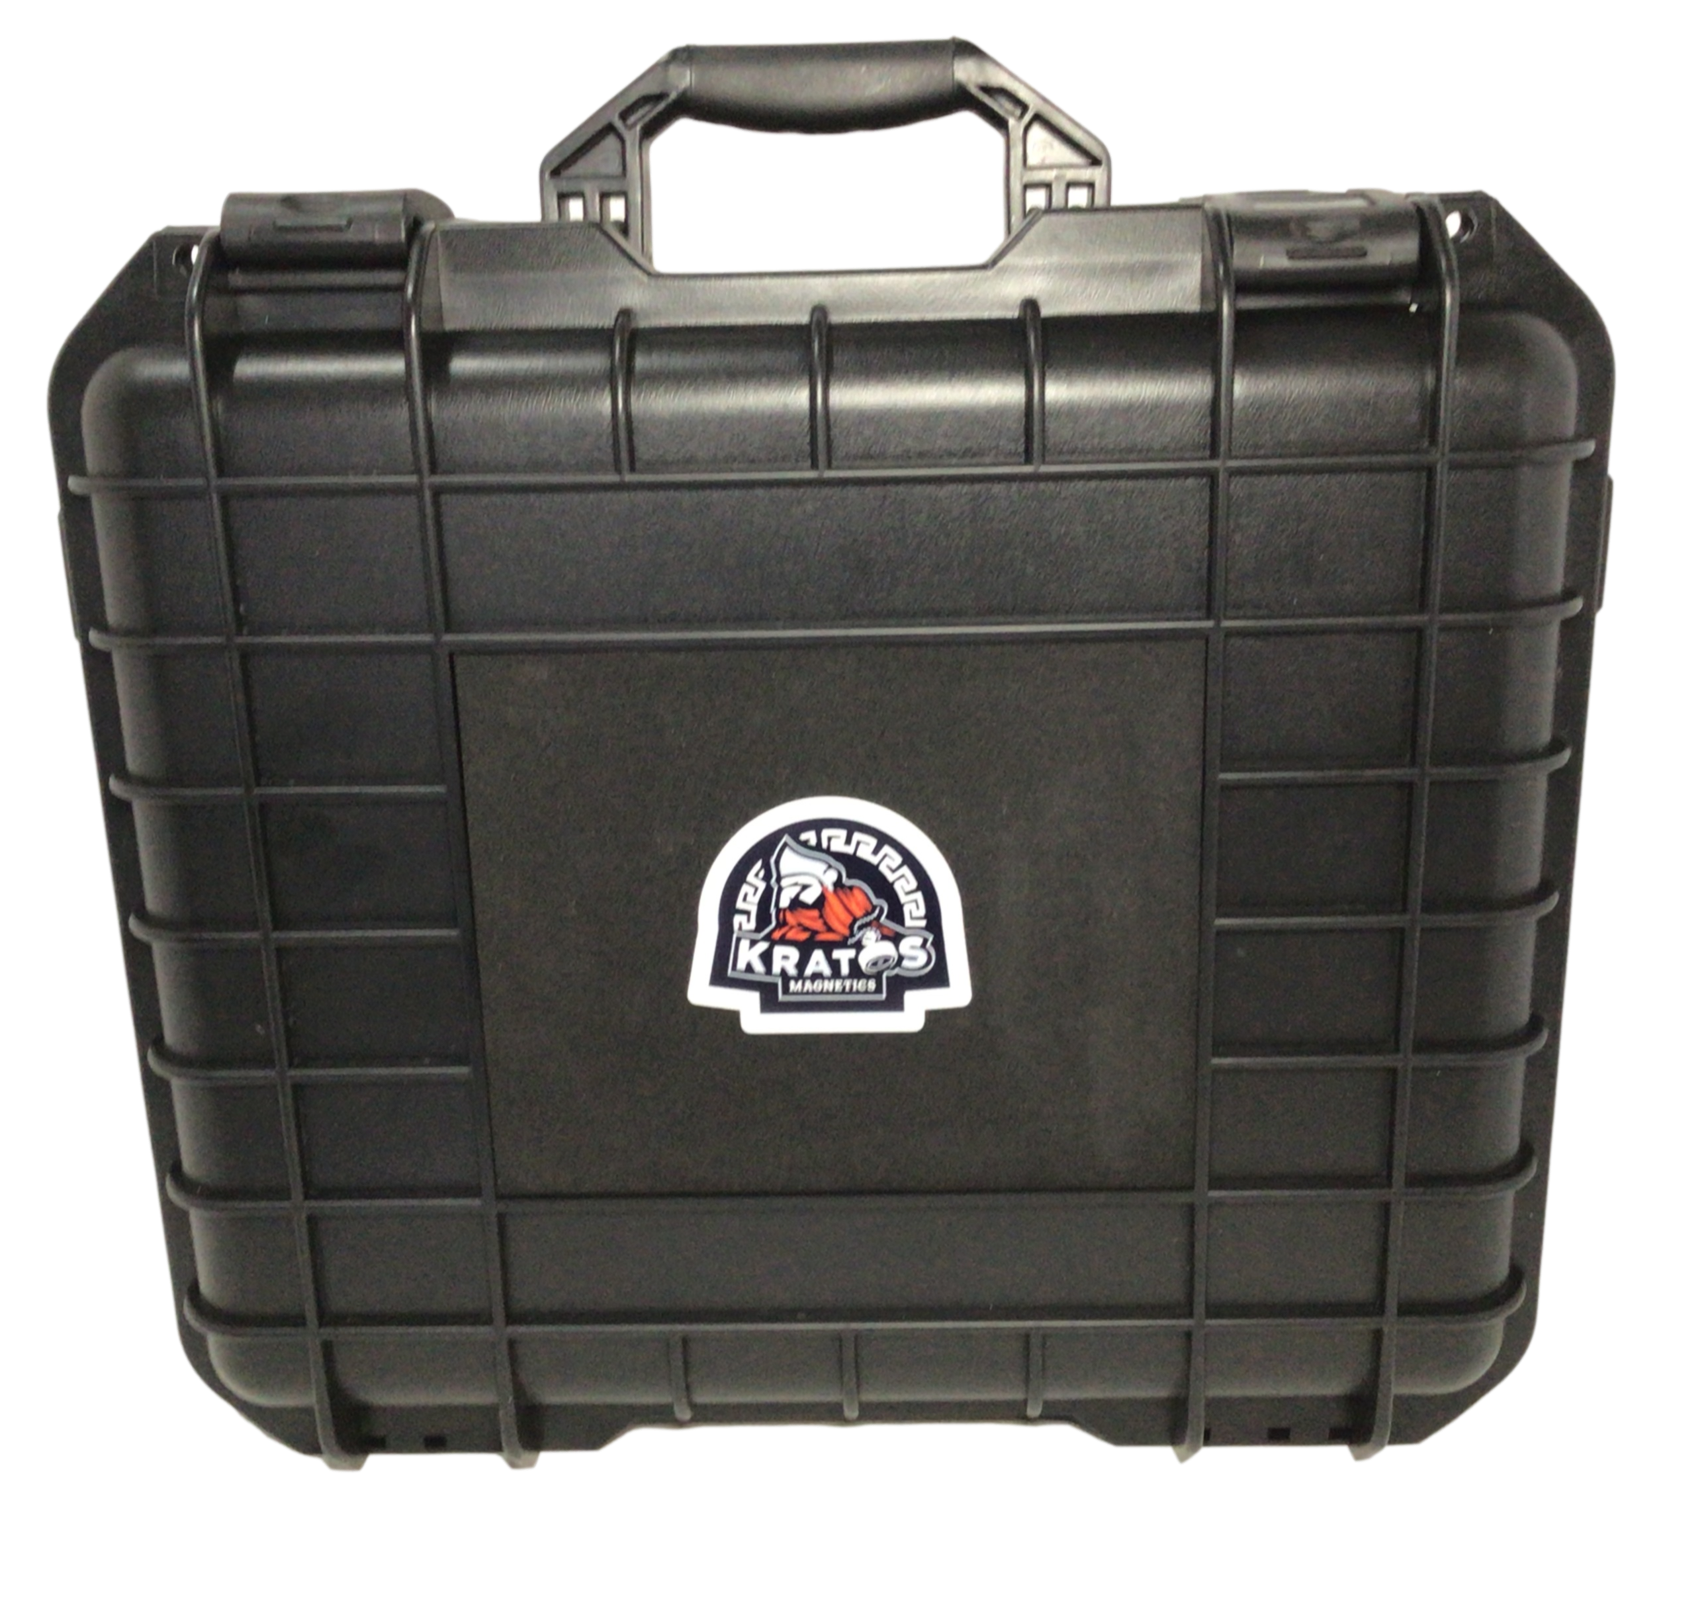 Kratos Case 3000 Single Sided Neodymium Magnet Fishing Kit